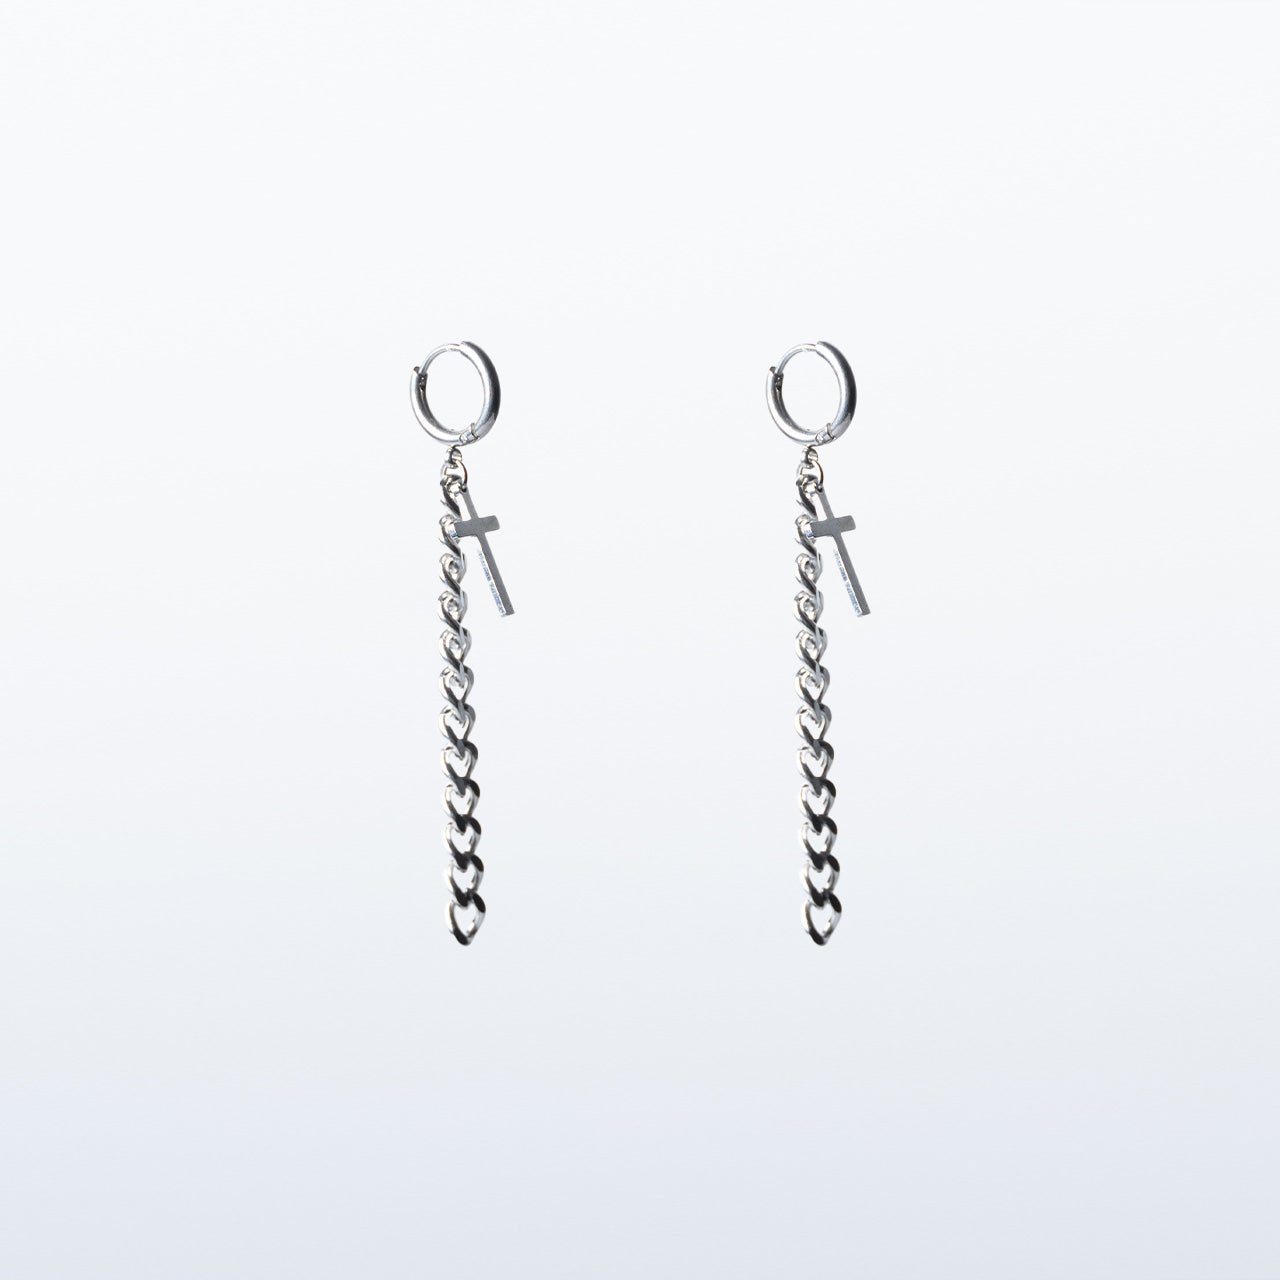 Snash - Earrings "Cross &amp; Chain" silver